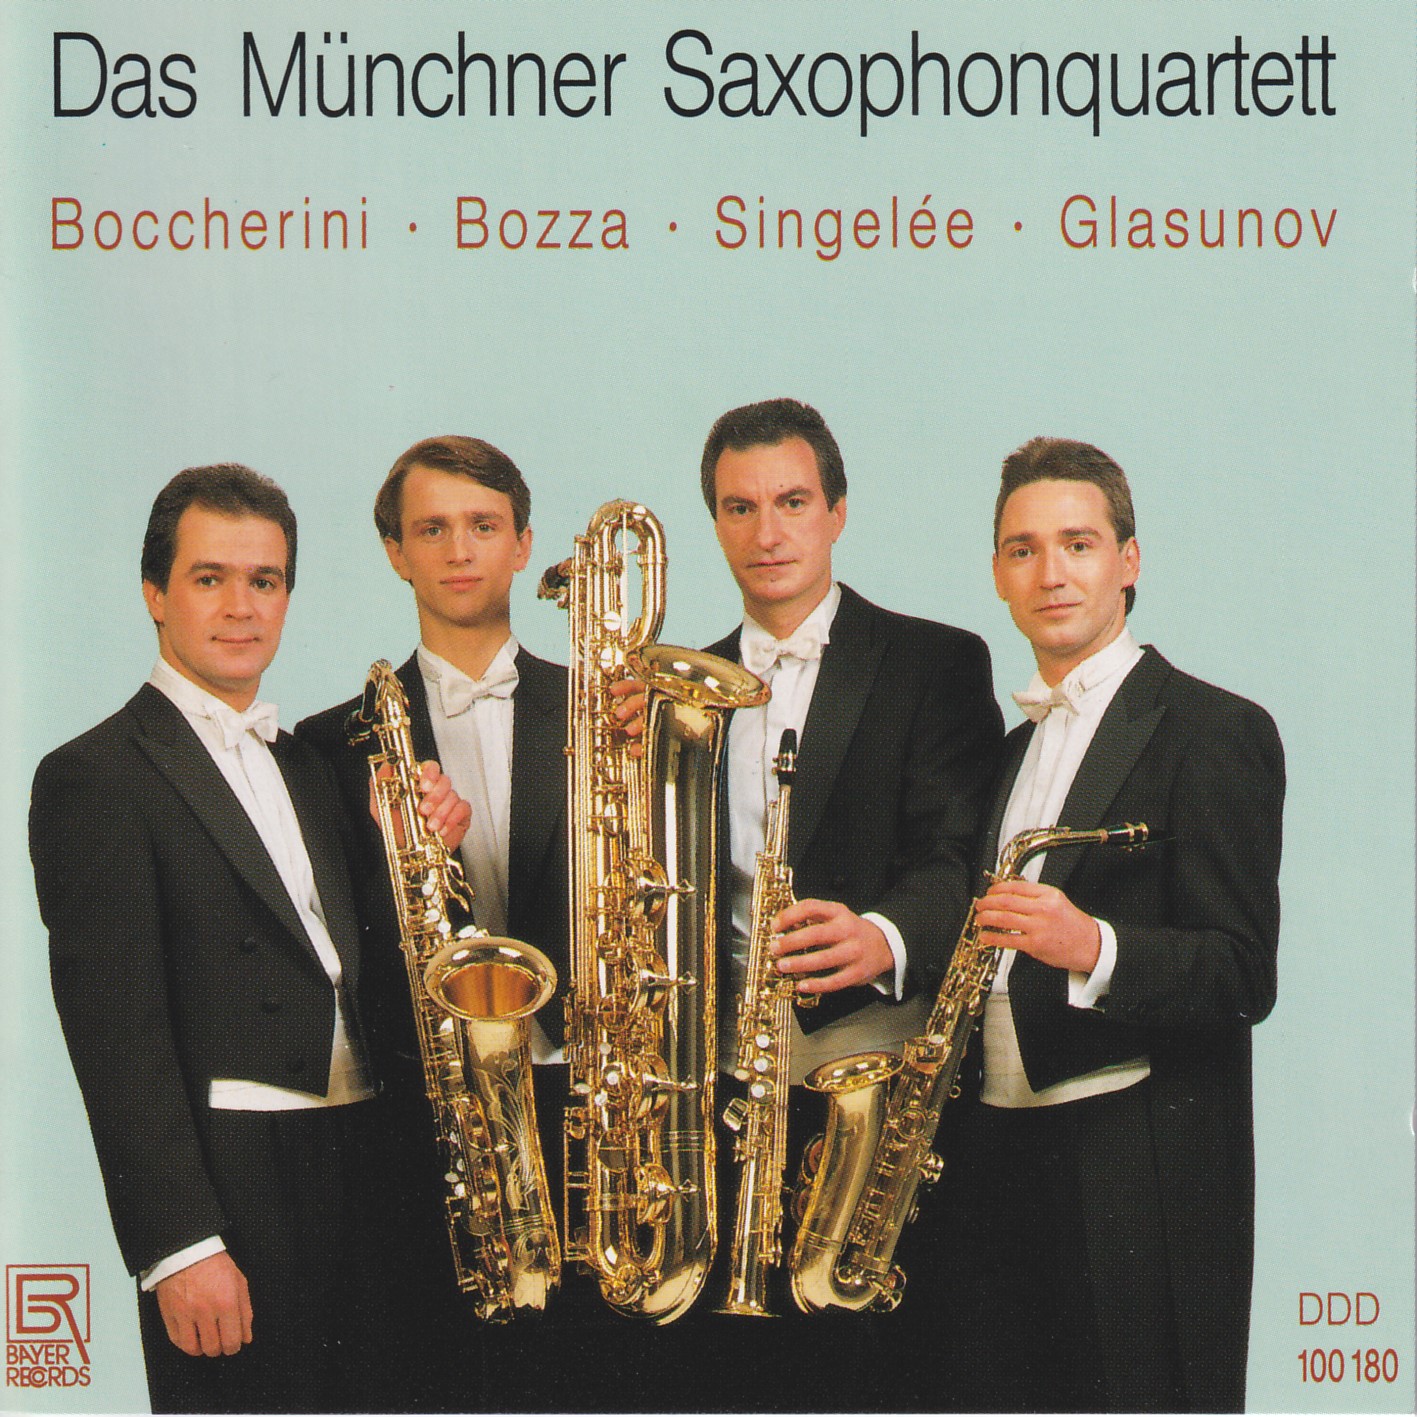 Das Münchner Saxophonquartett